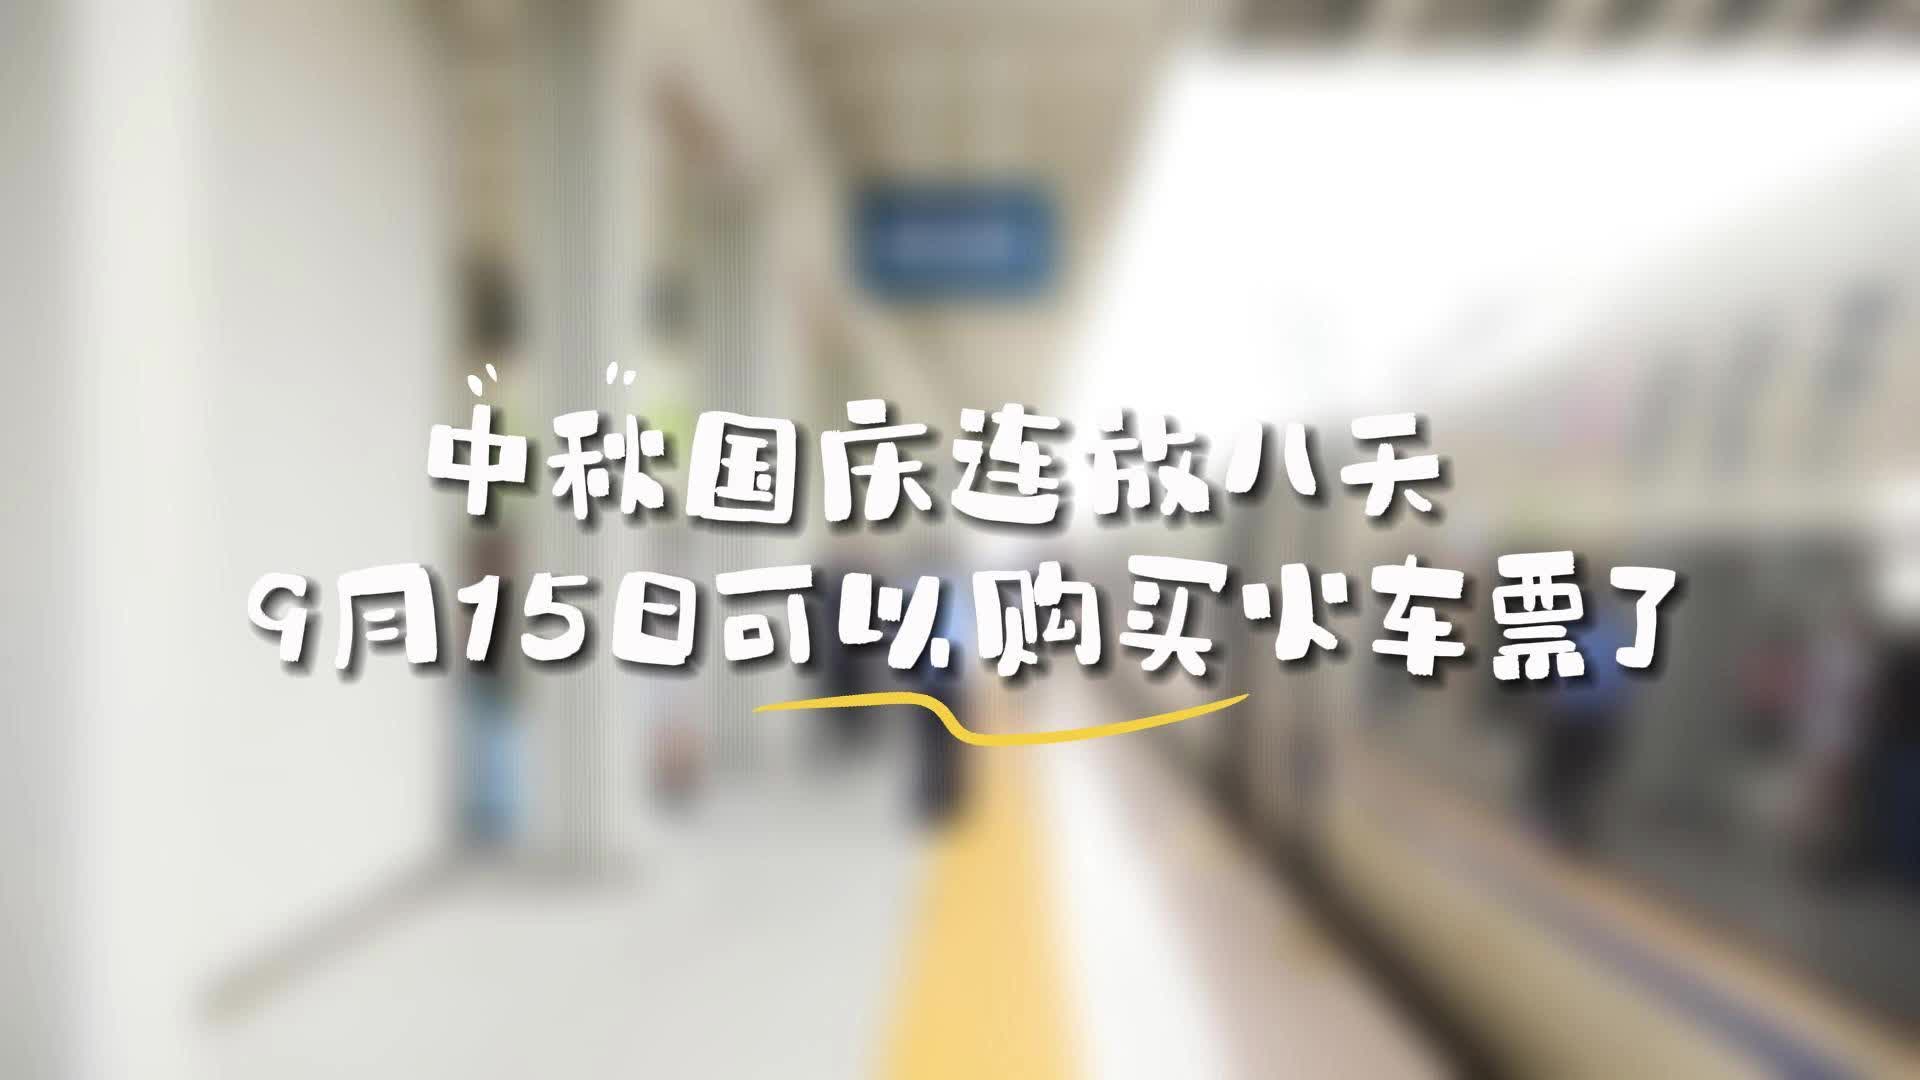 更济宁 | 中秋国庆连放八天 9月15日可以购买火车票了